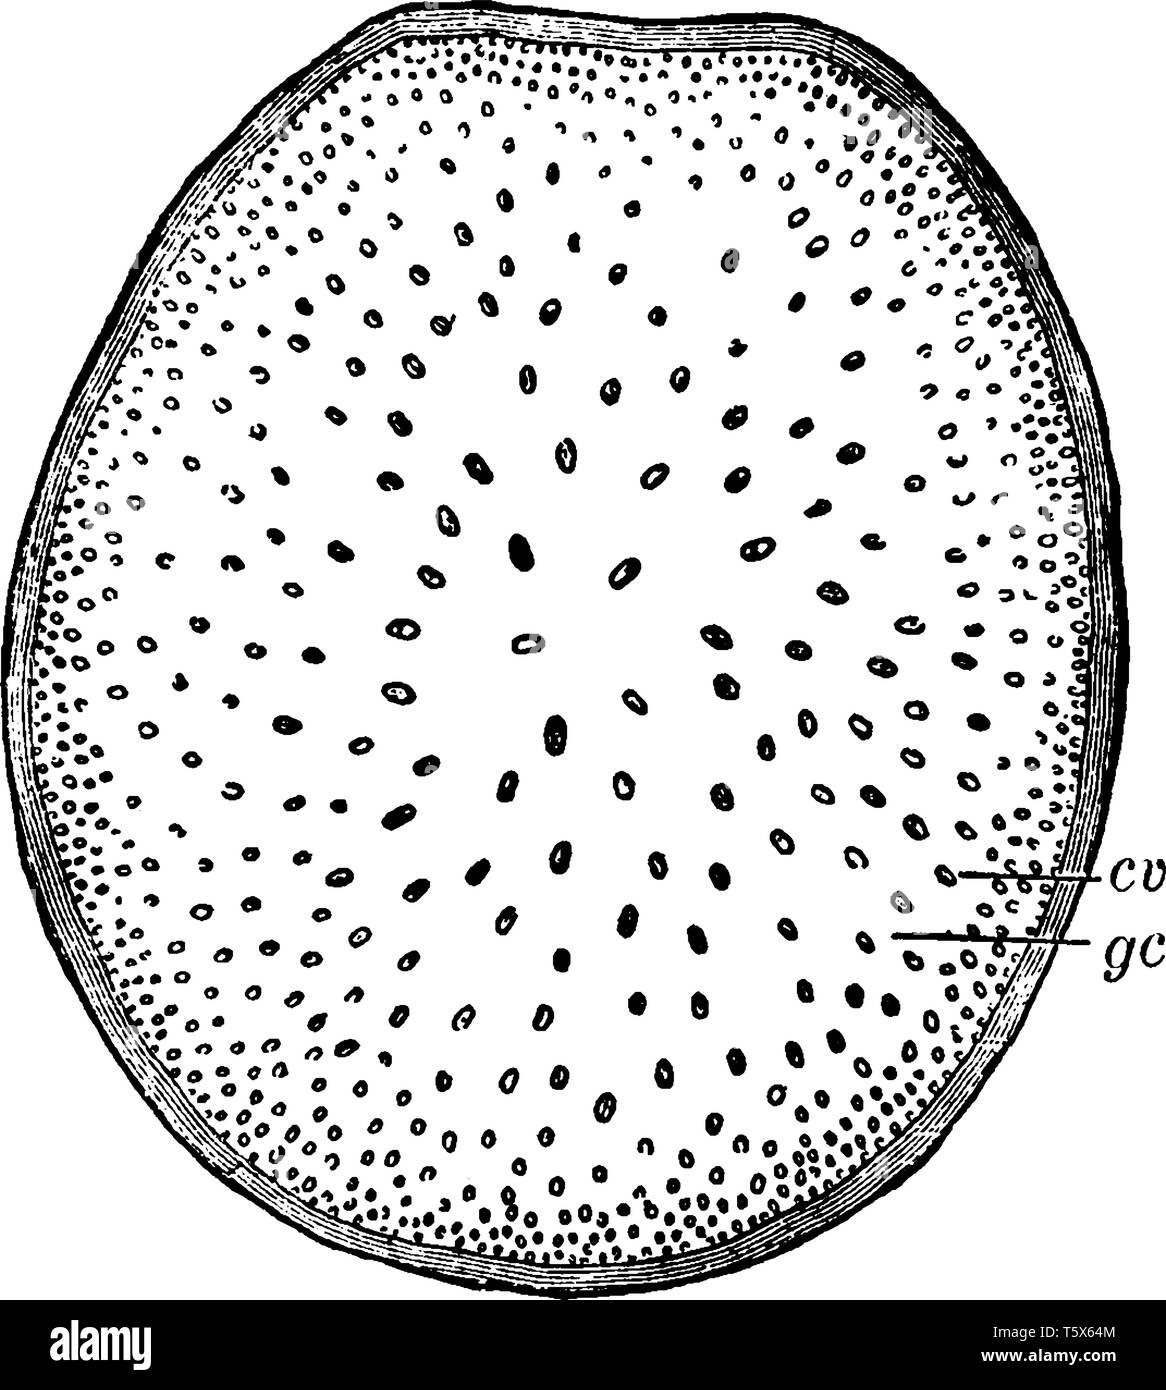 Das ist Bild Querschnitt von Stammzellen der indischen Mais, wo cv, Fibro-leitbündel, GC, markige Material zwischen Bundles, vintage Strichzeichnung oder engra Stock Vektor